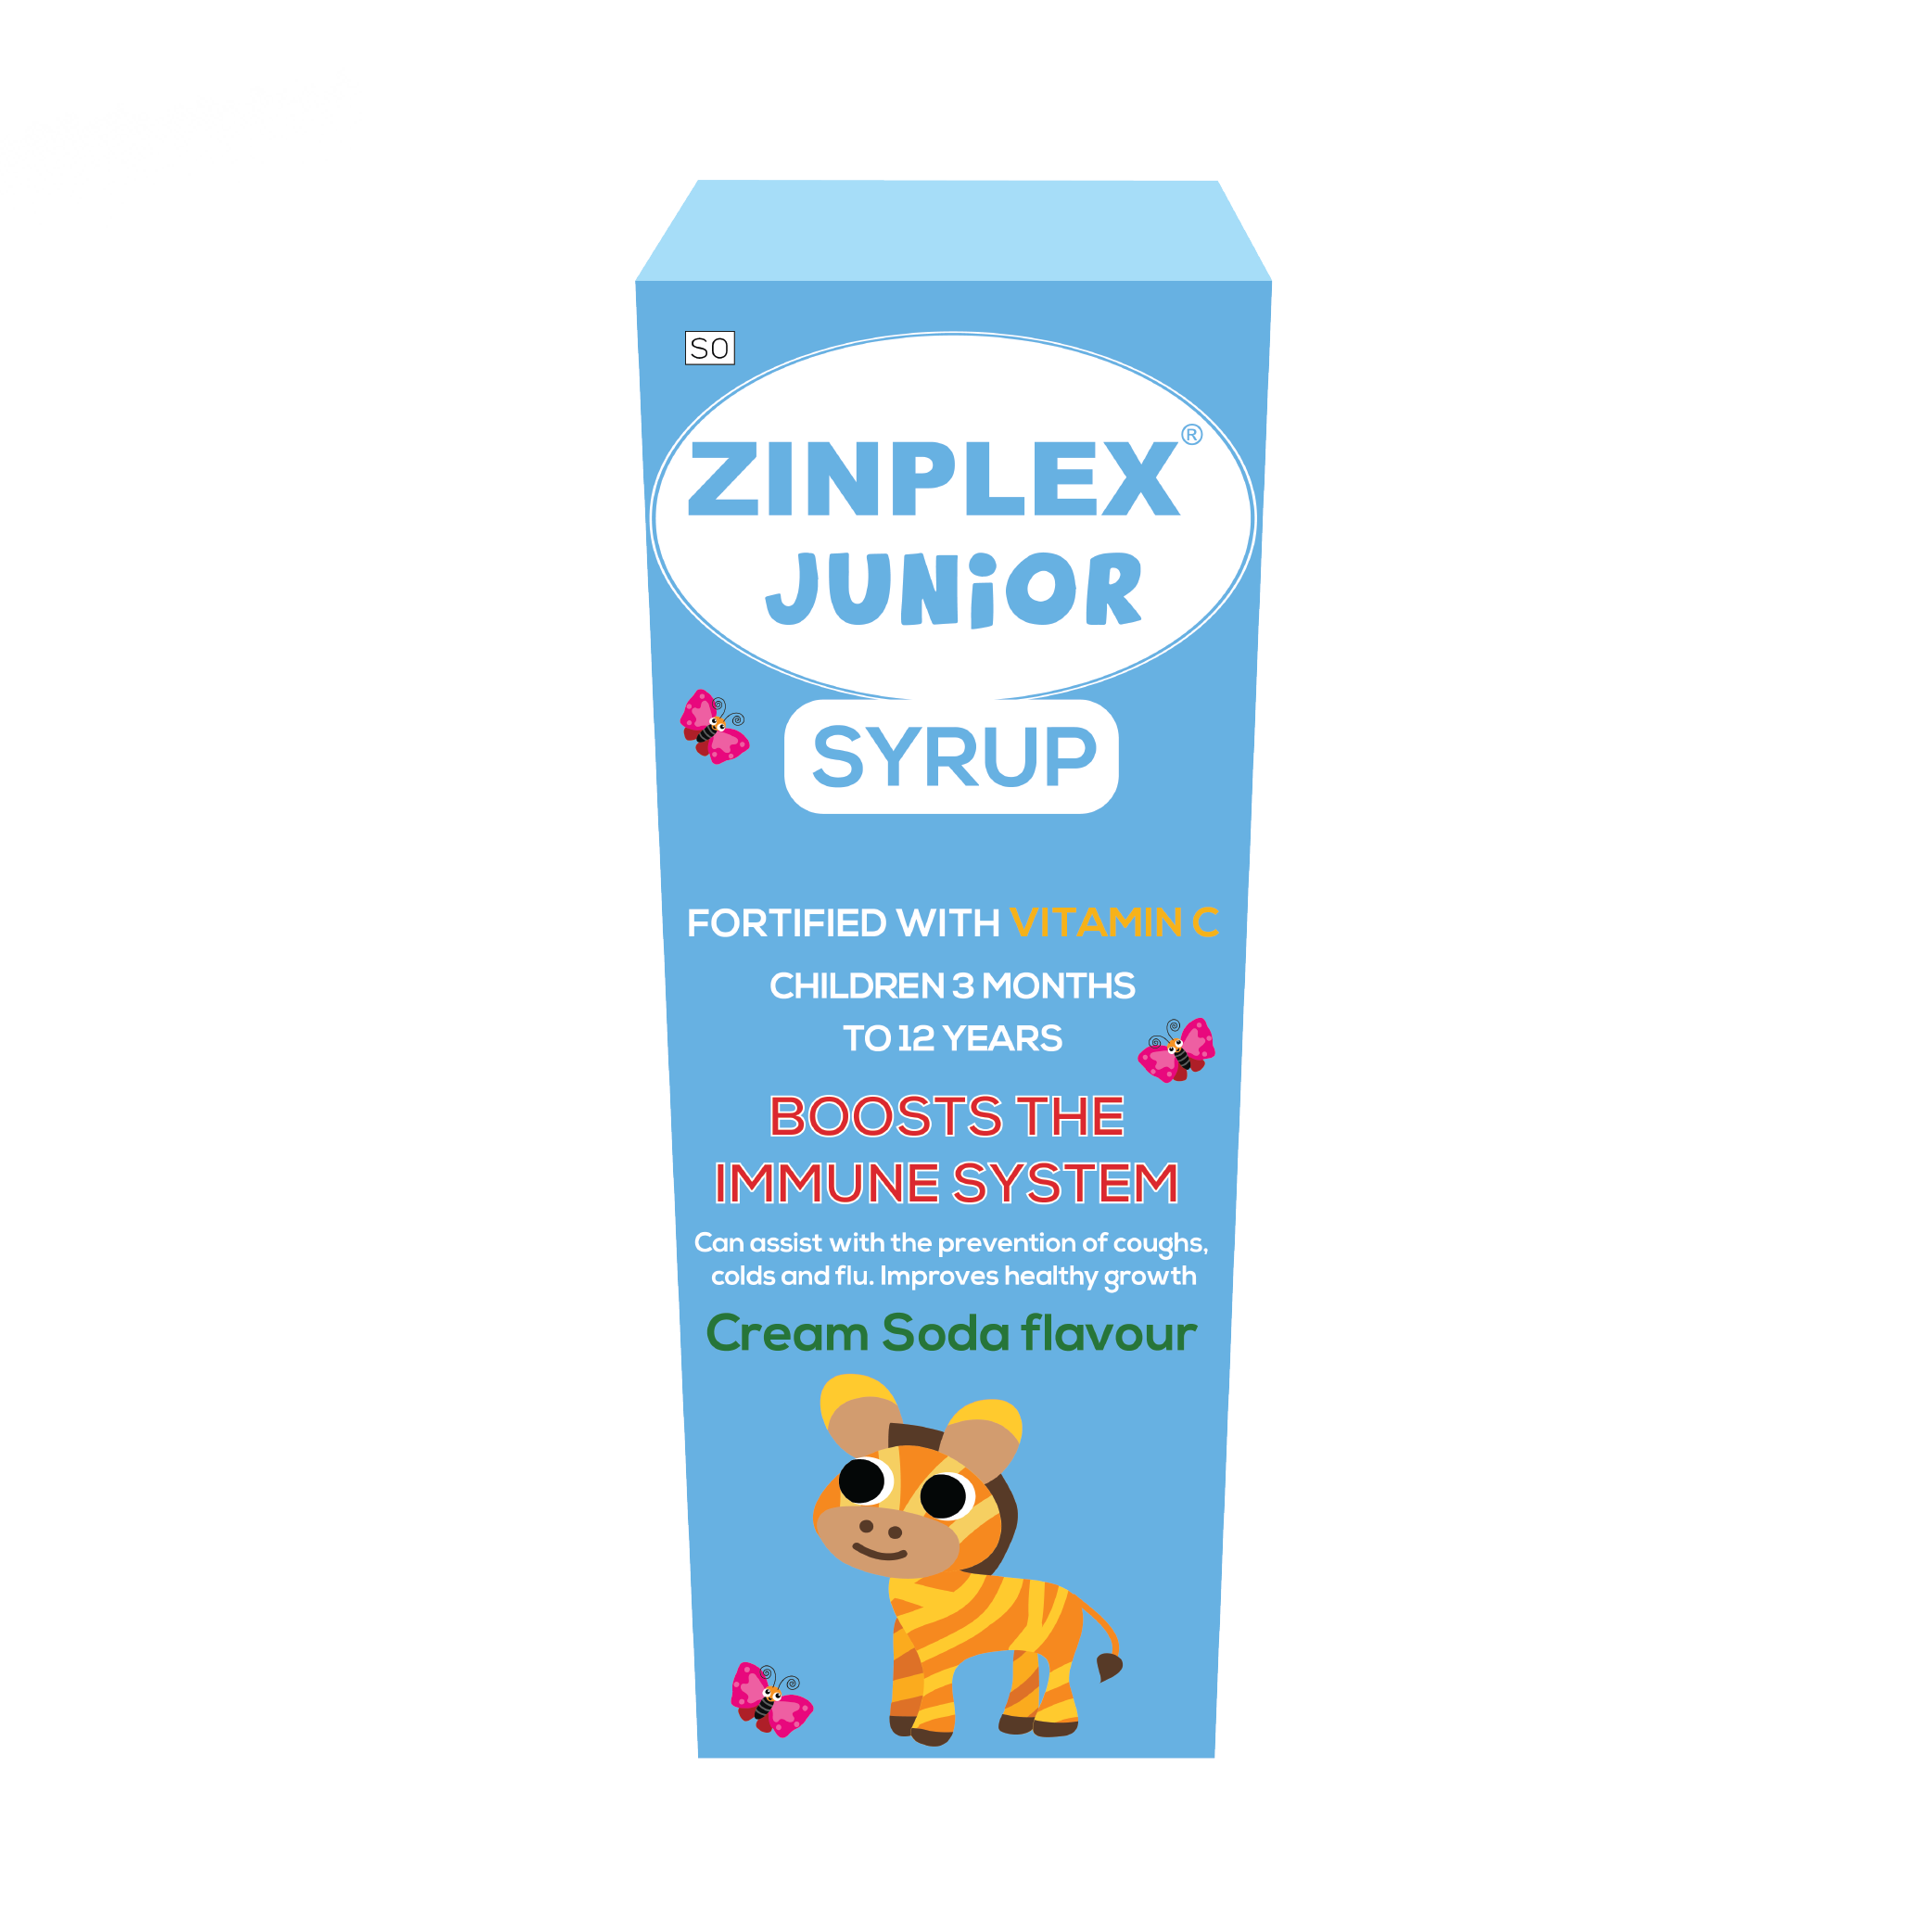 Zinplex Junior Syrup